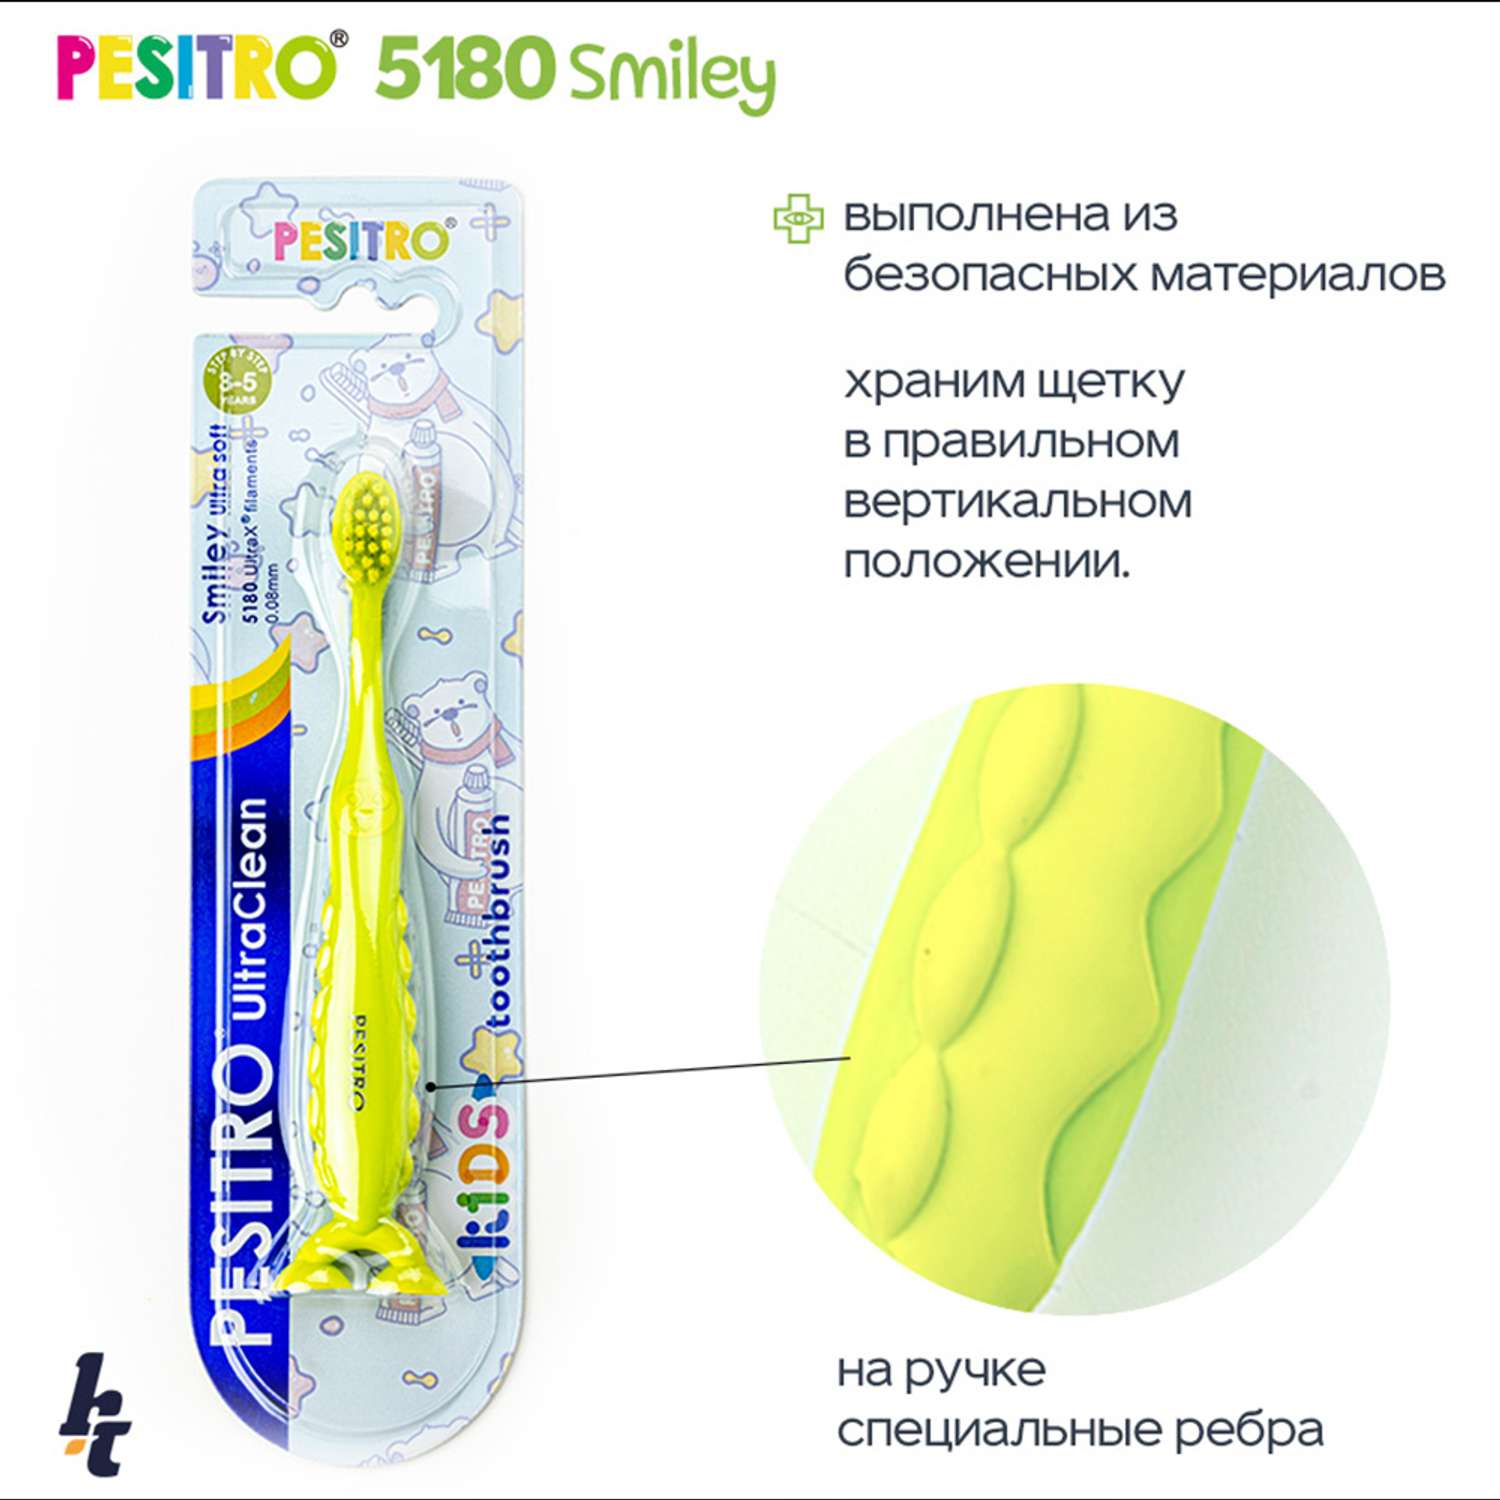 Детская зубная щетка Pesitro Smiley Ultra soft 5180 Зеленая - фото 4